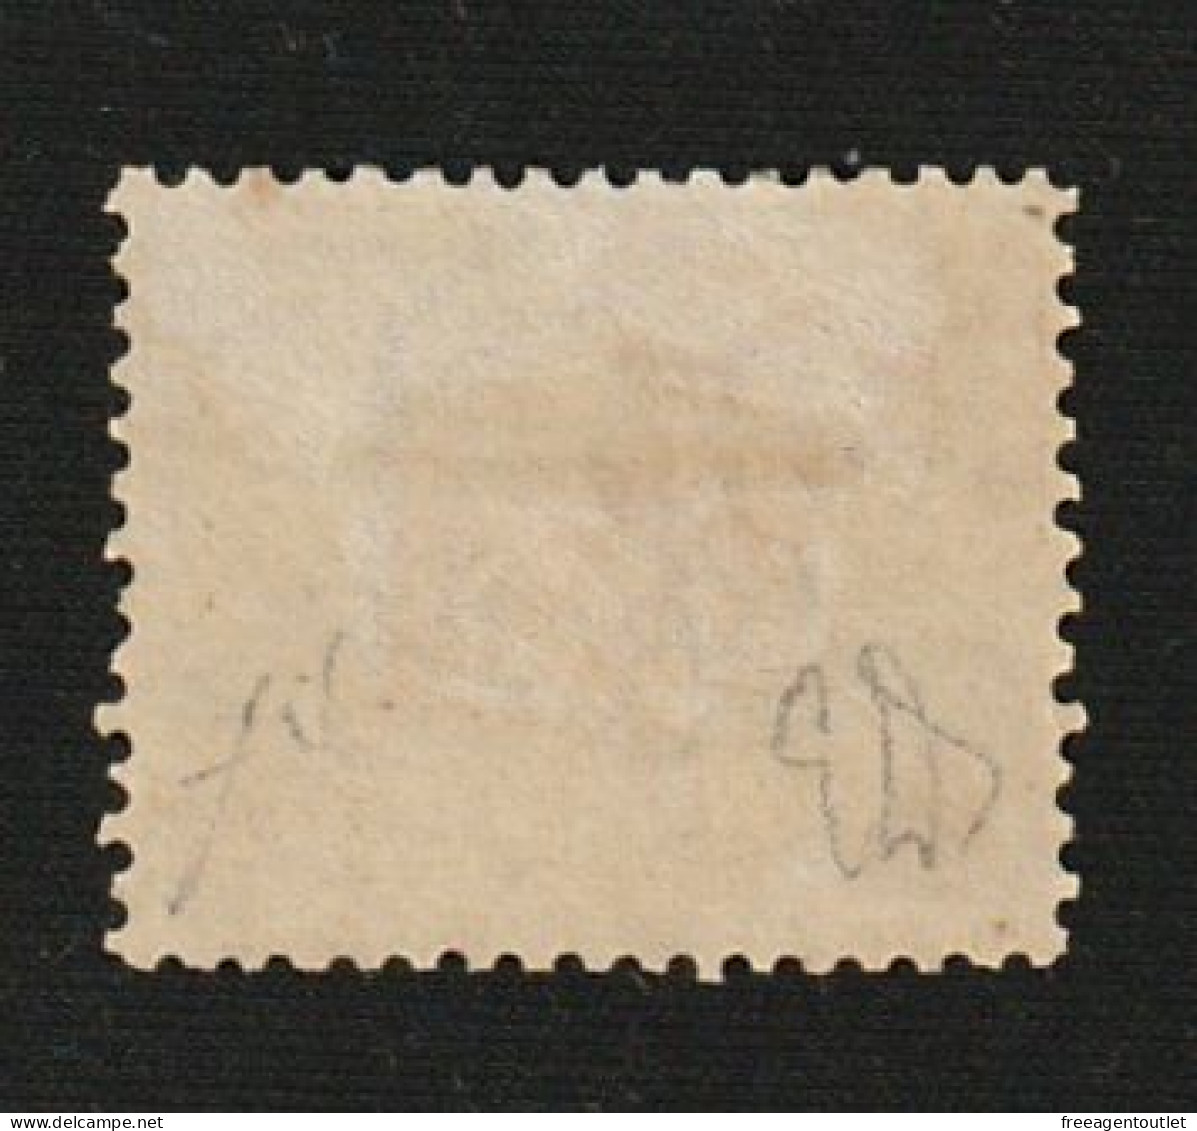 San Marino 1877 - 30c. - UNUSED - Brown Coat Of Arms - Signed By Diena - Unused Stamps